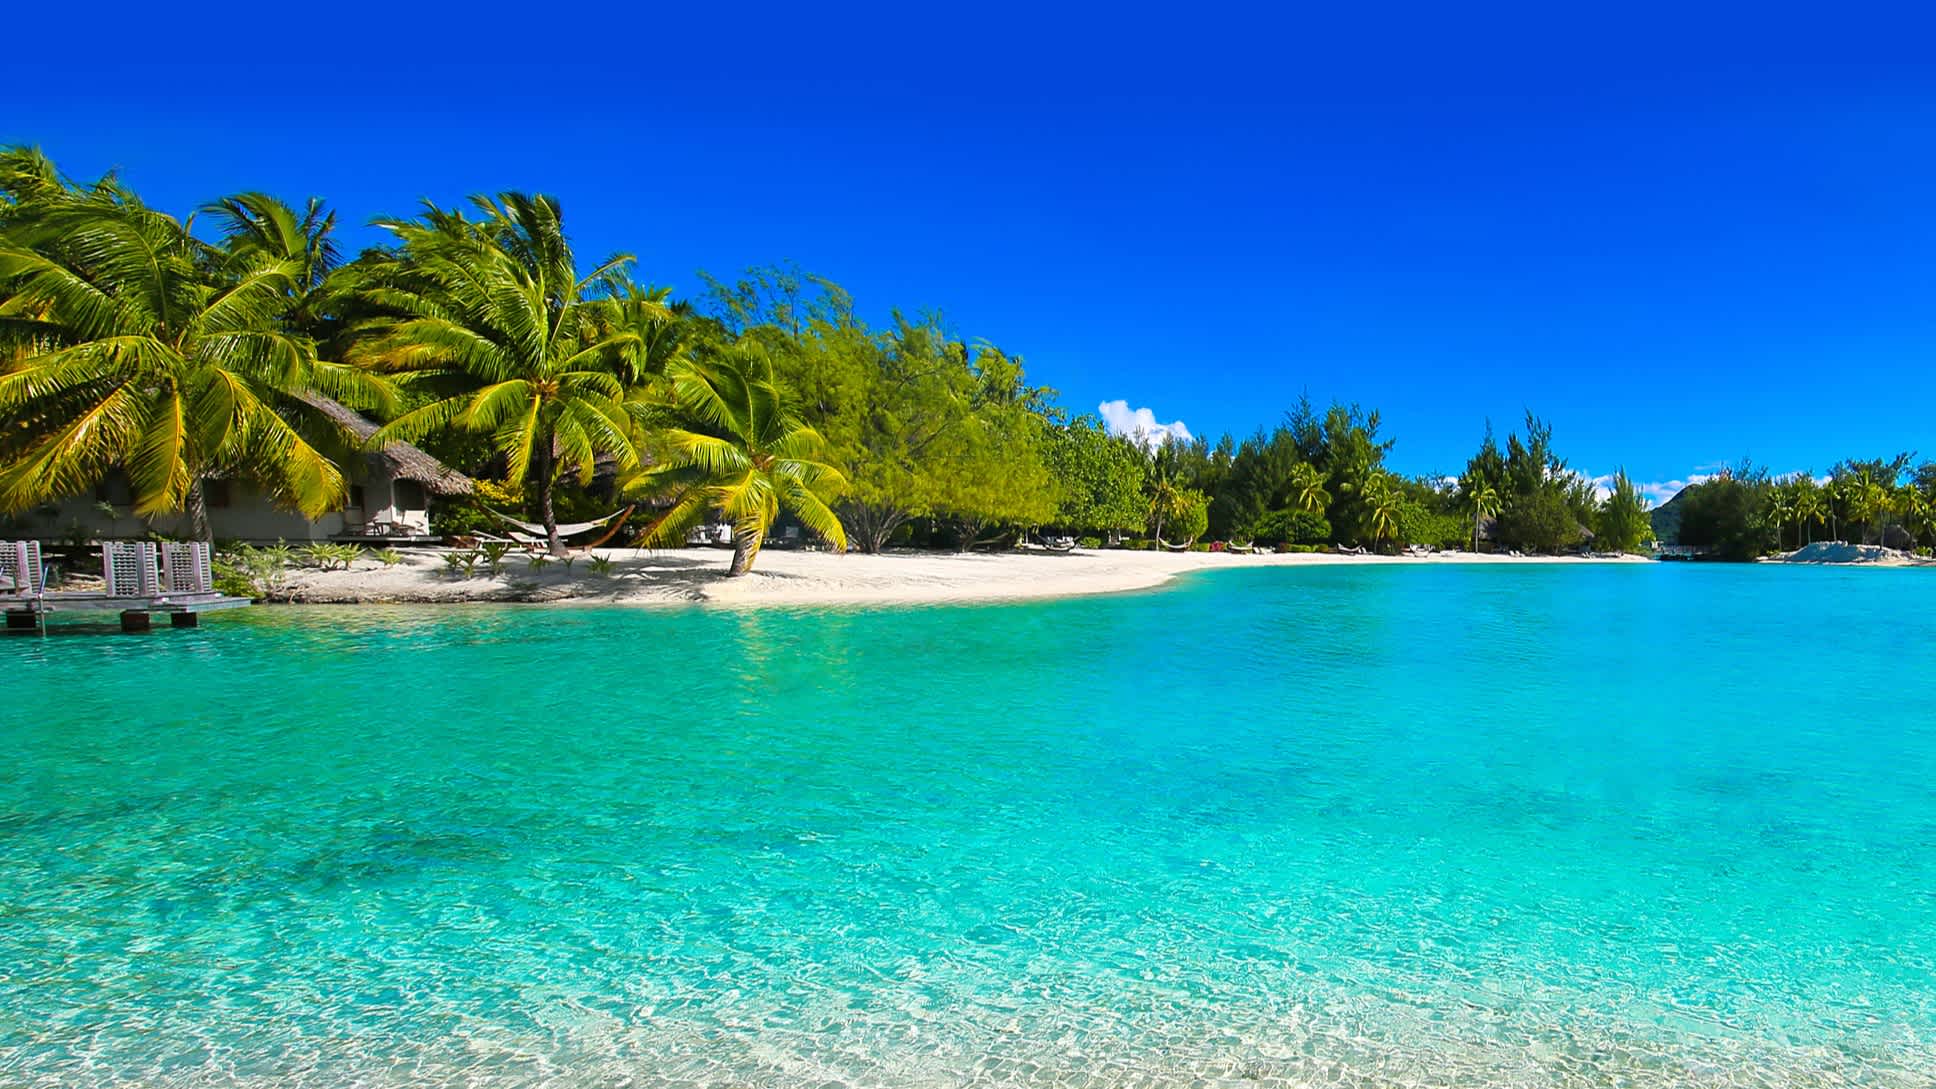 Blick auf den tropischen Strand Maui, Tahiti, Französisch Polynesien

